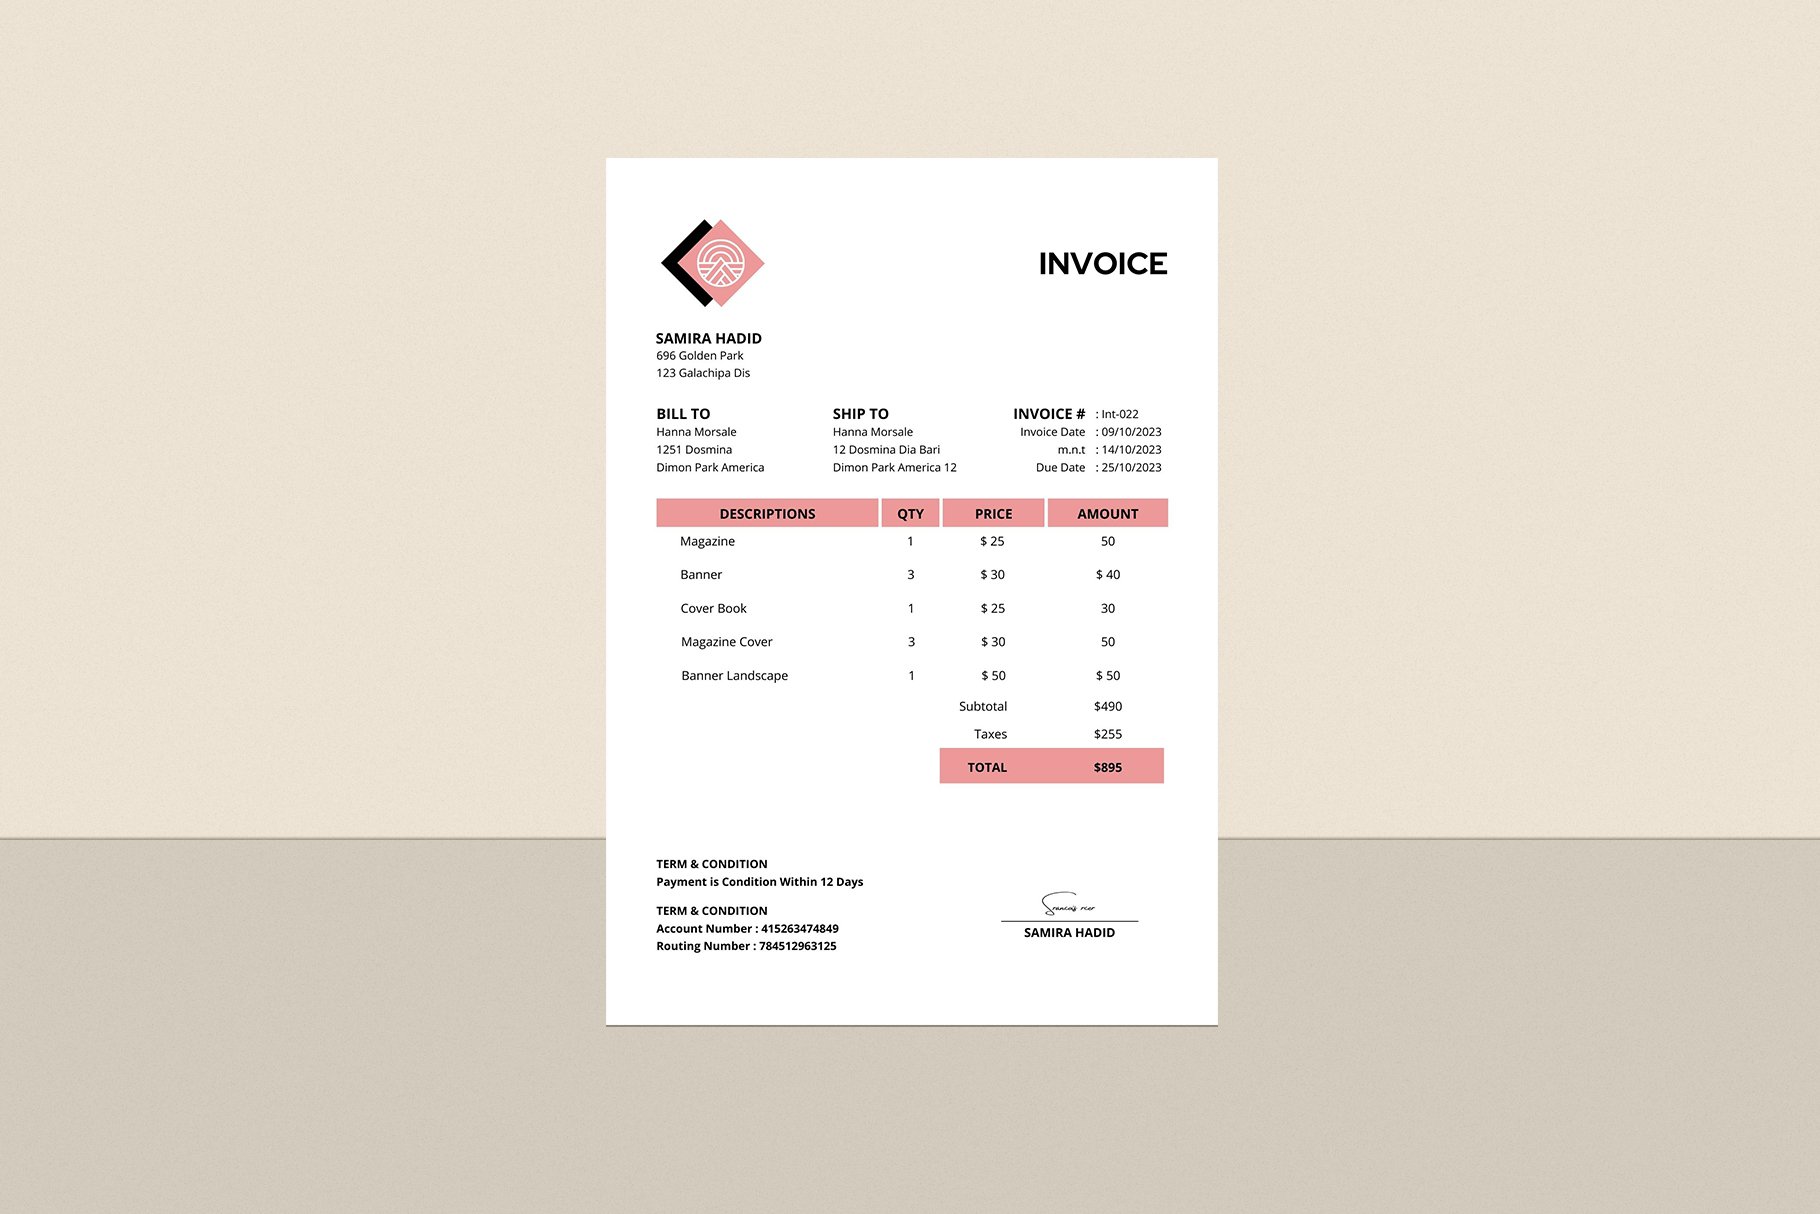 Invoice Design preview image.